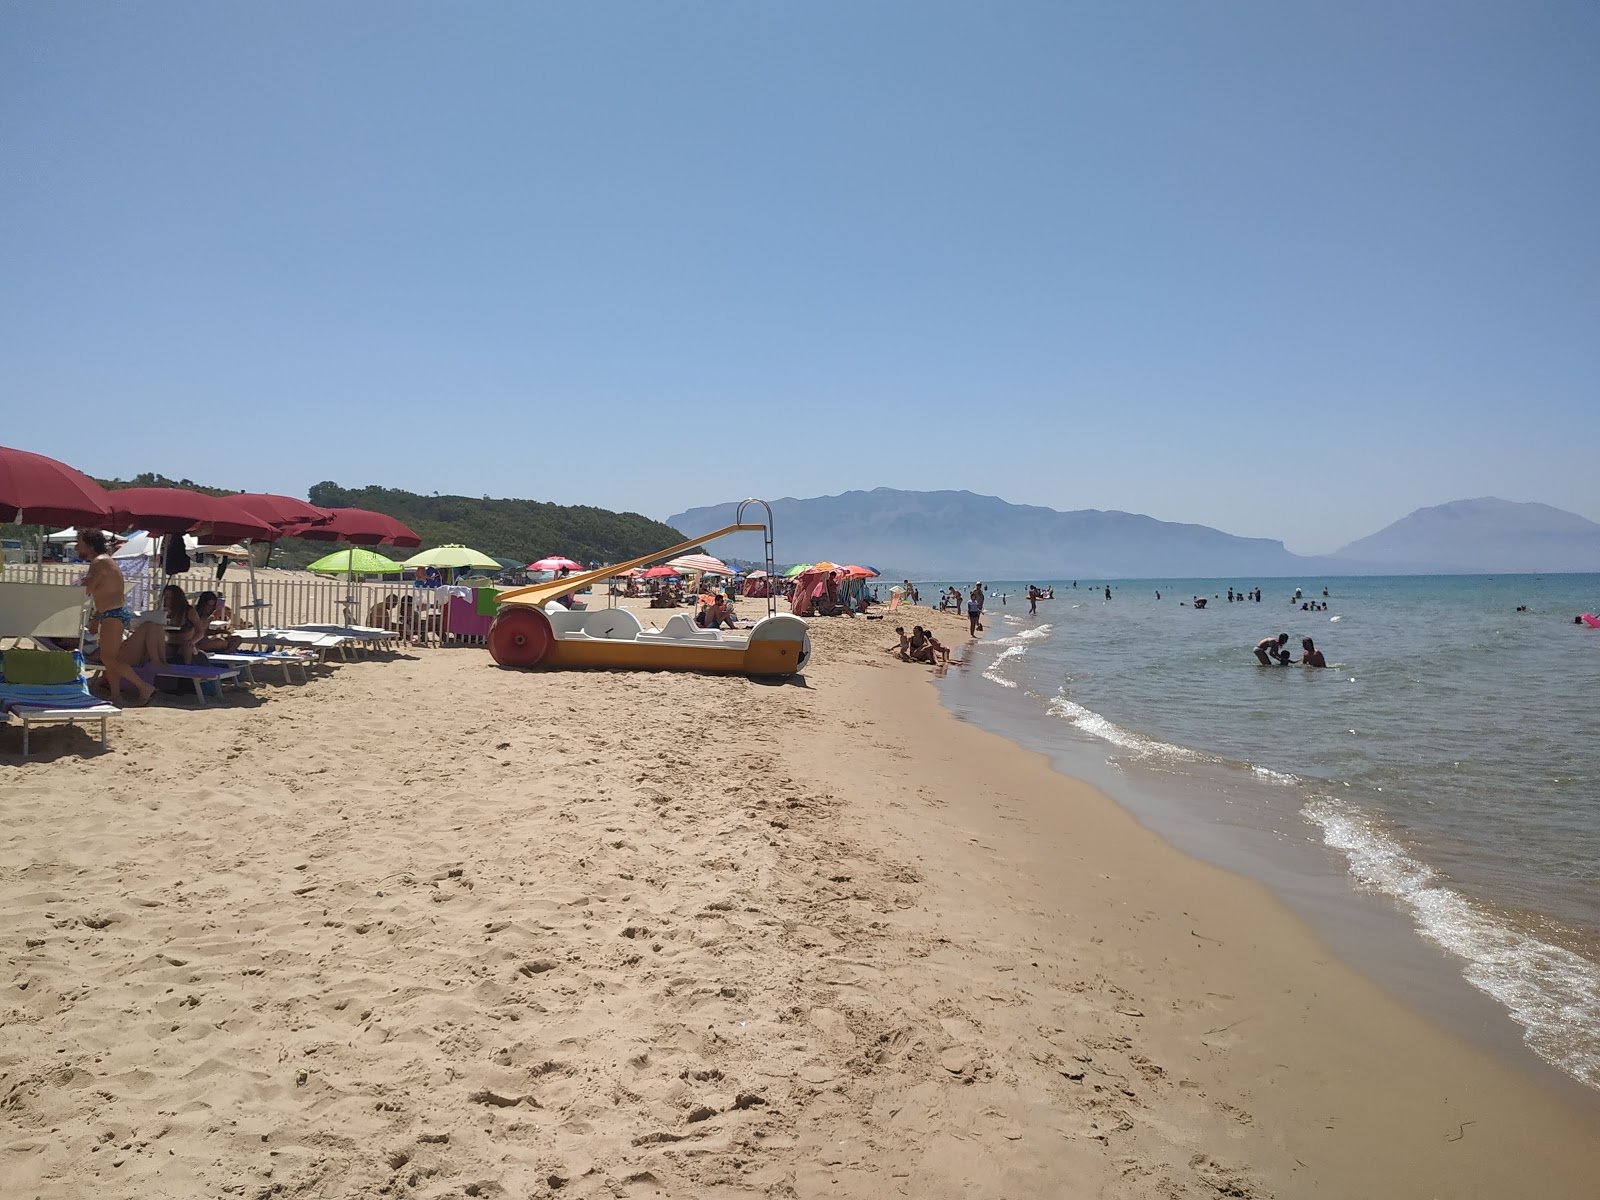 Foto af Spiaggia Di Balestrate - populært sted blandt afslapningskendere